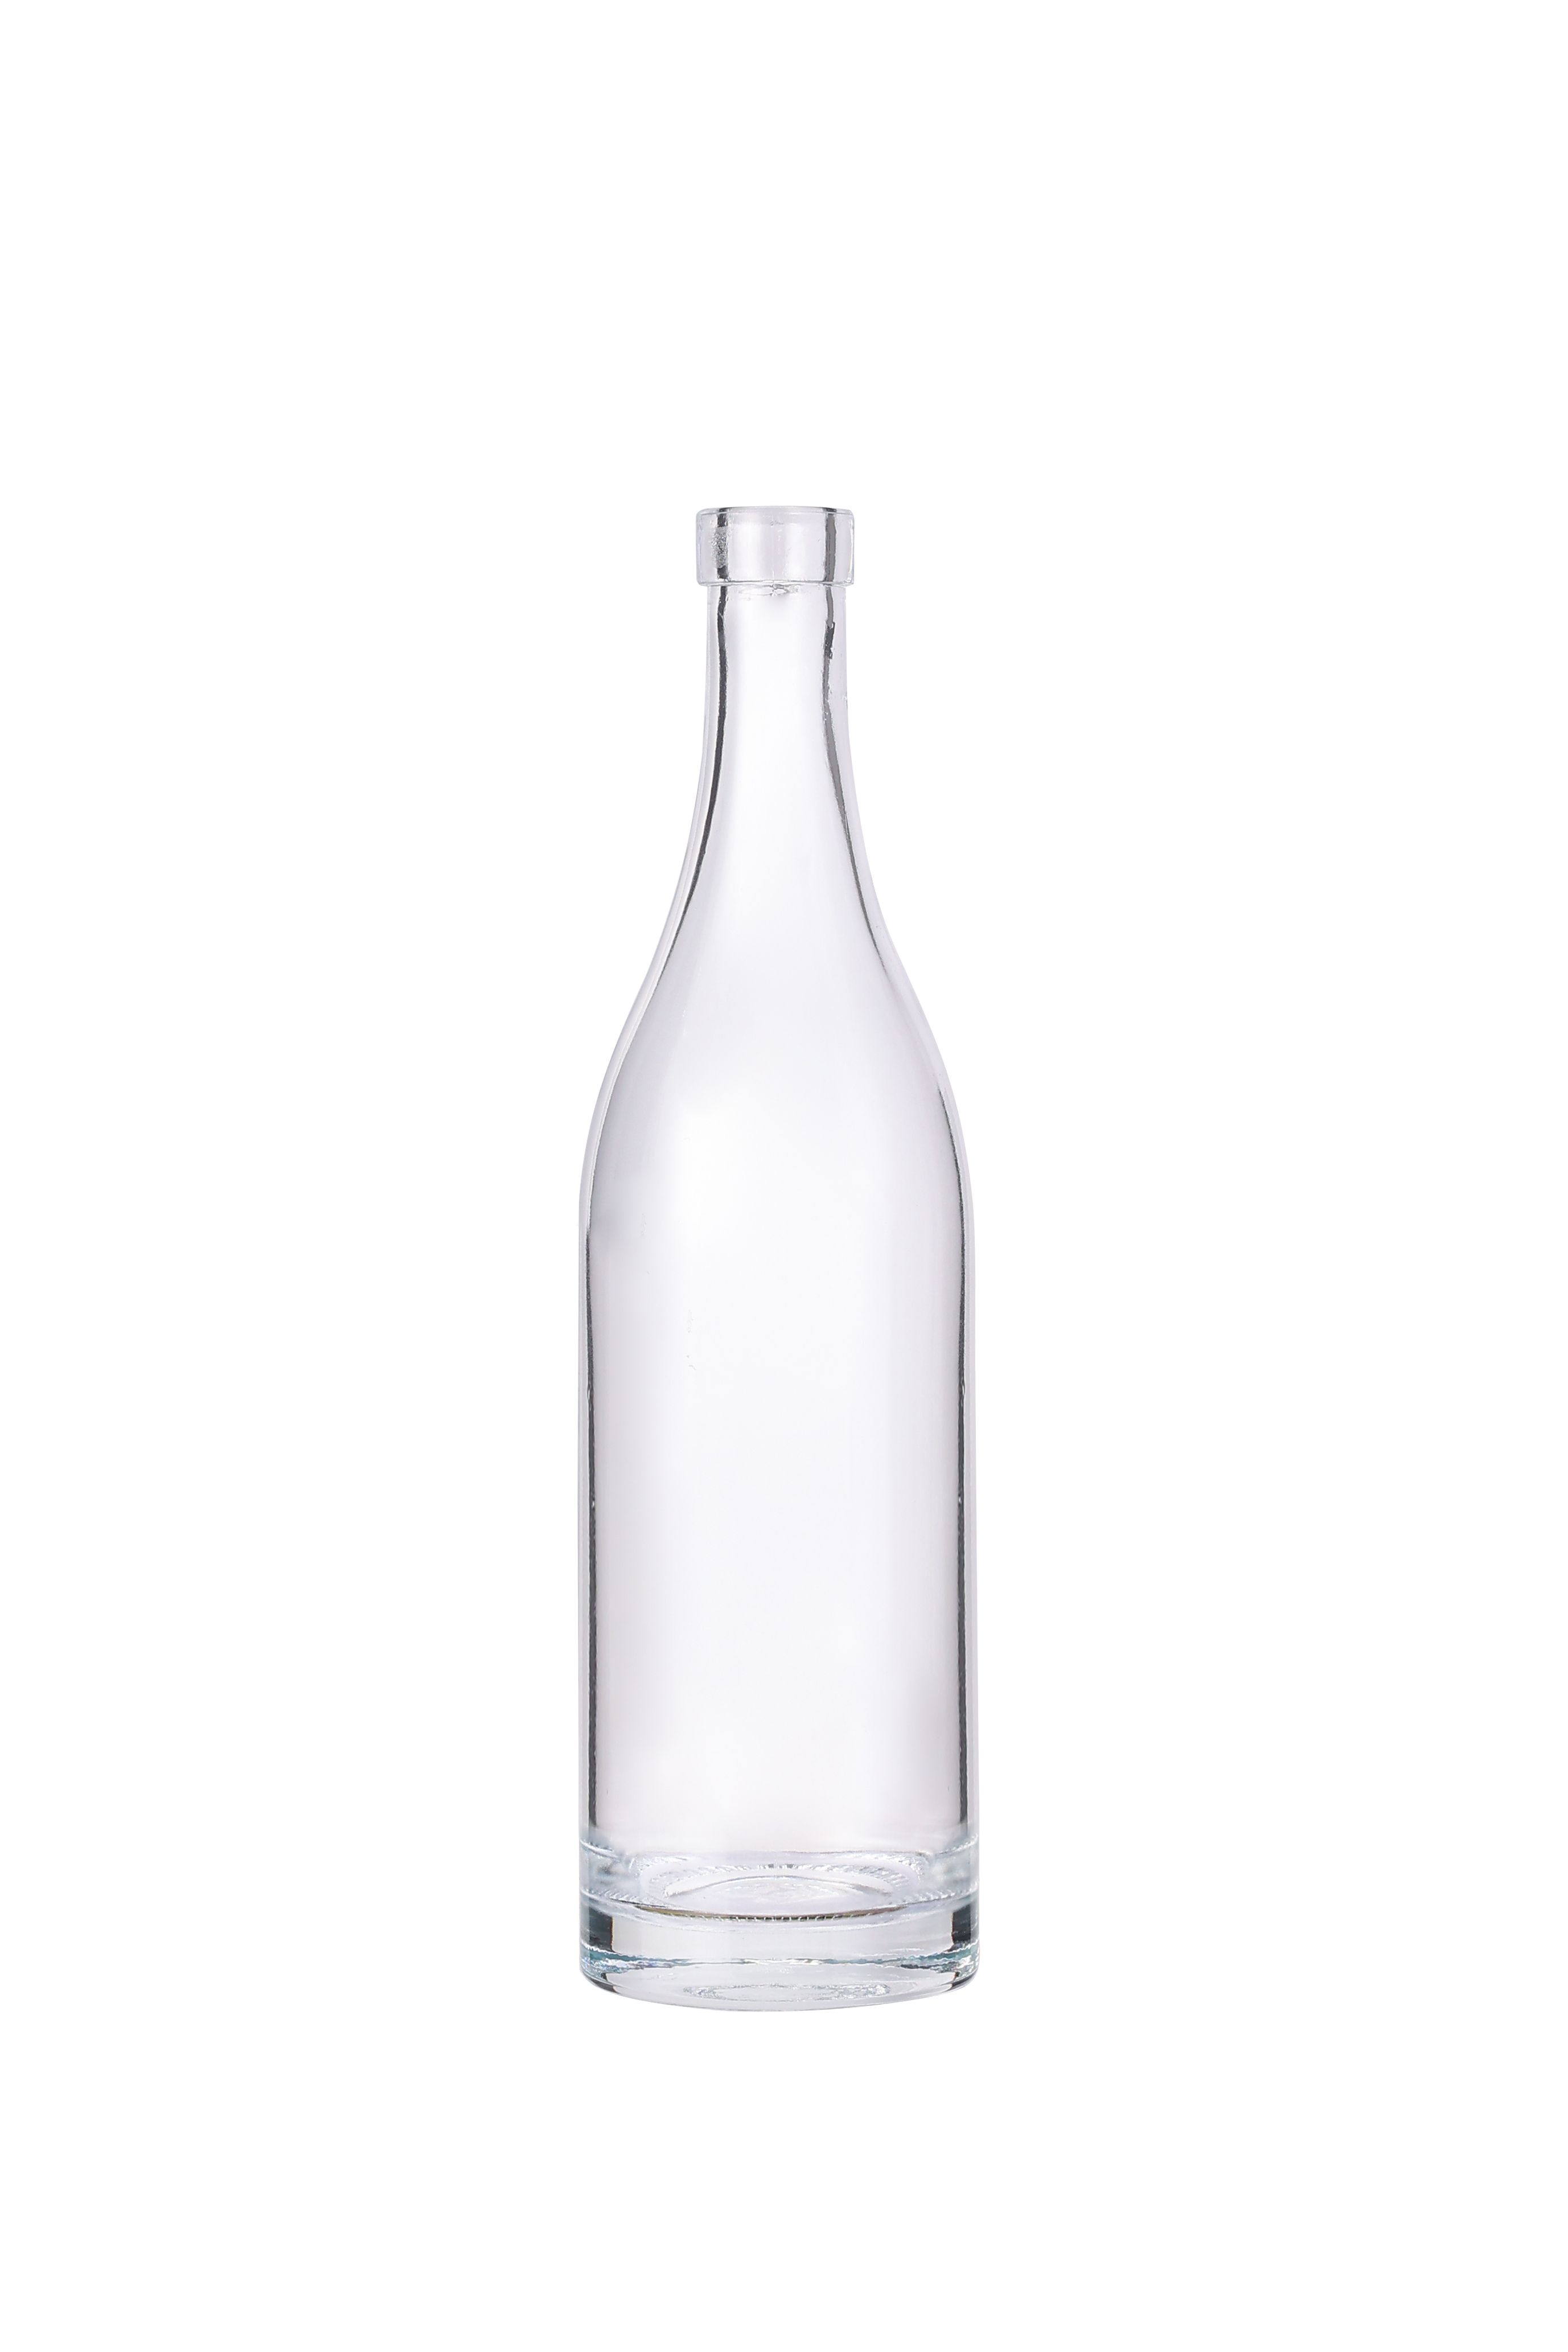 Glass Liquor Bottle 700ml 750ml Nordic Gin Whiskey Vodka Liquor Spirit Bottle for Liquor Rum 500ml